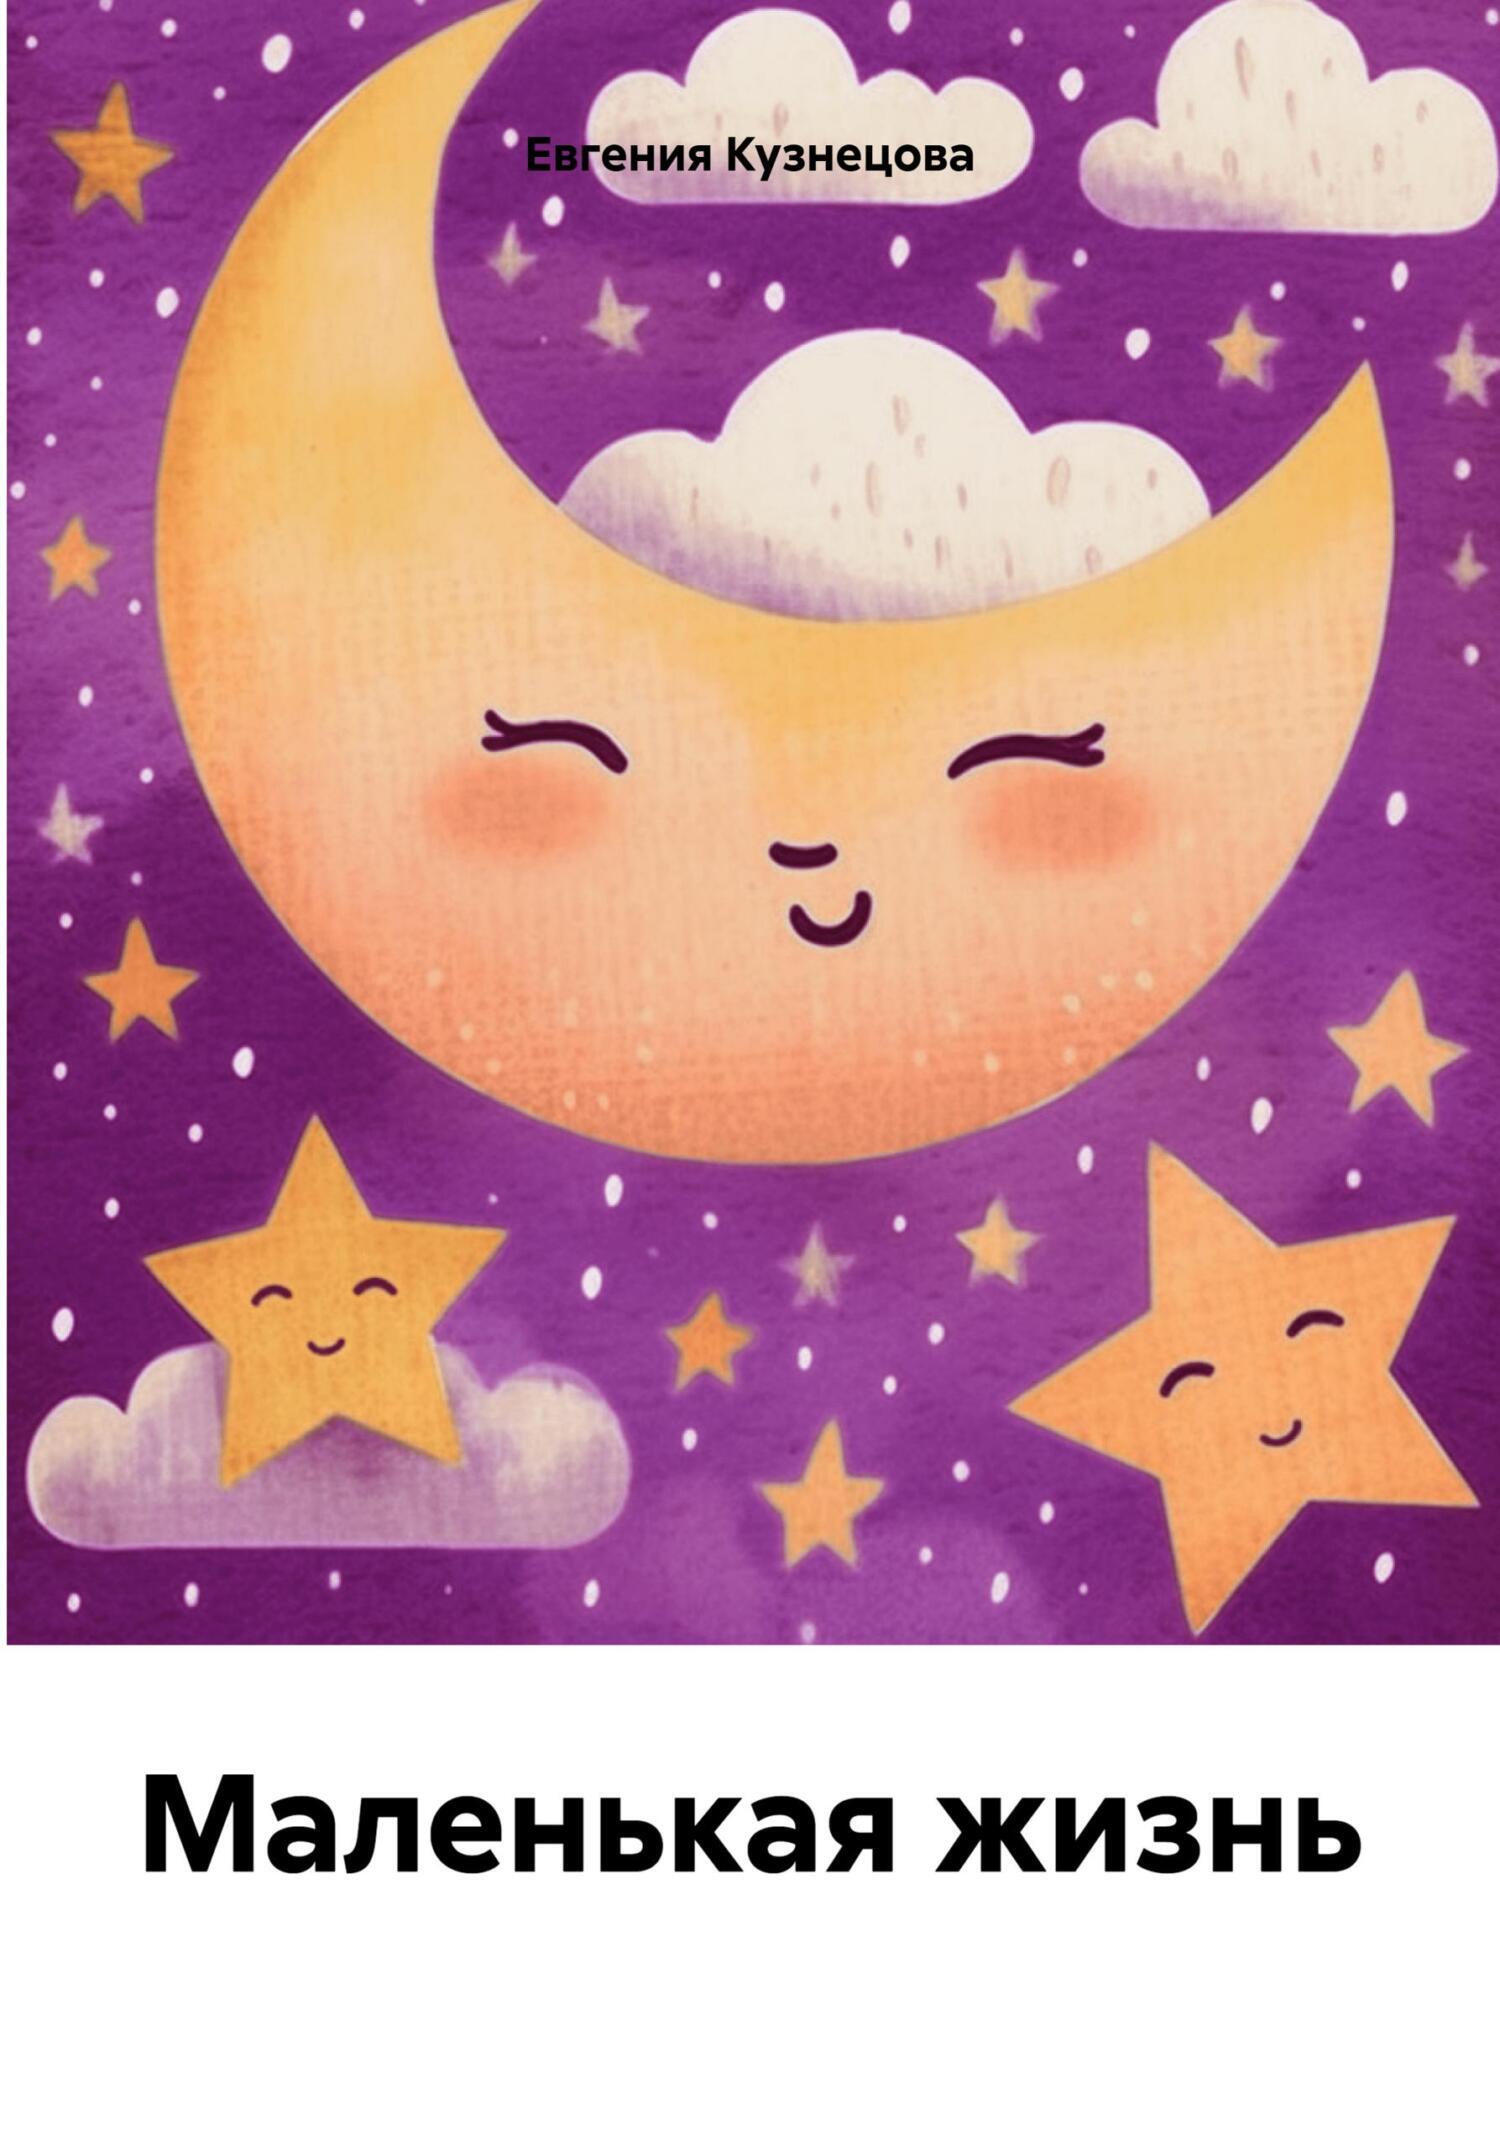 Маленькая жизнь, Евгения Кузнецова – скачать книгу fb2, epub, pdf на ЛитРес